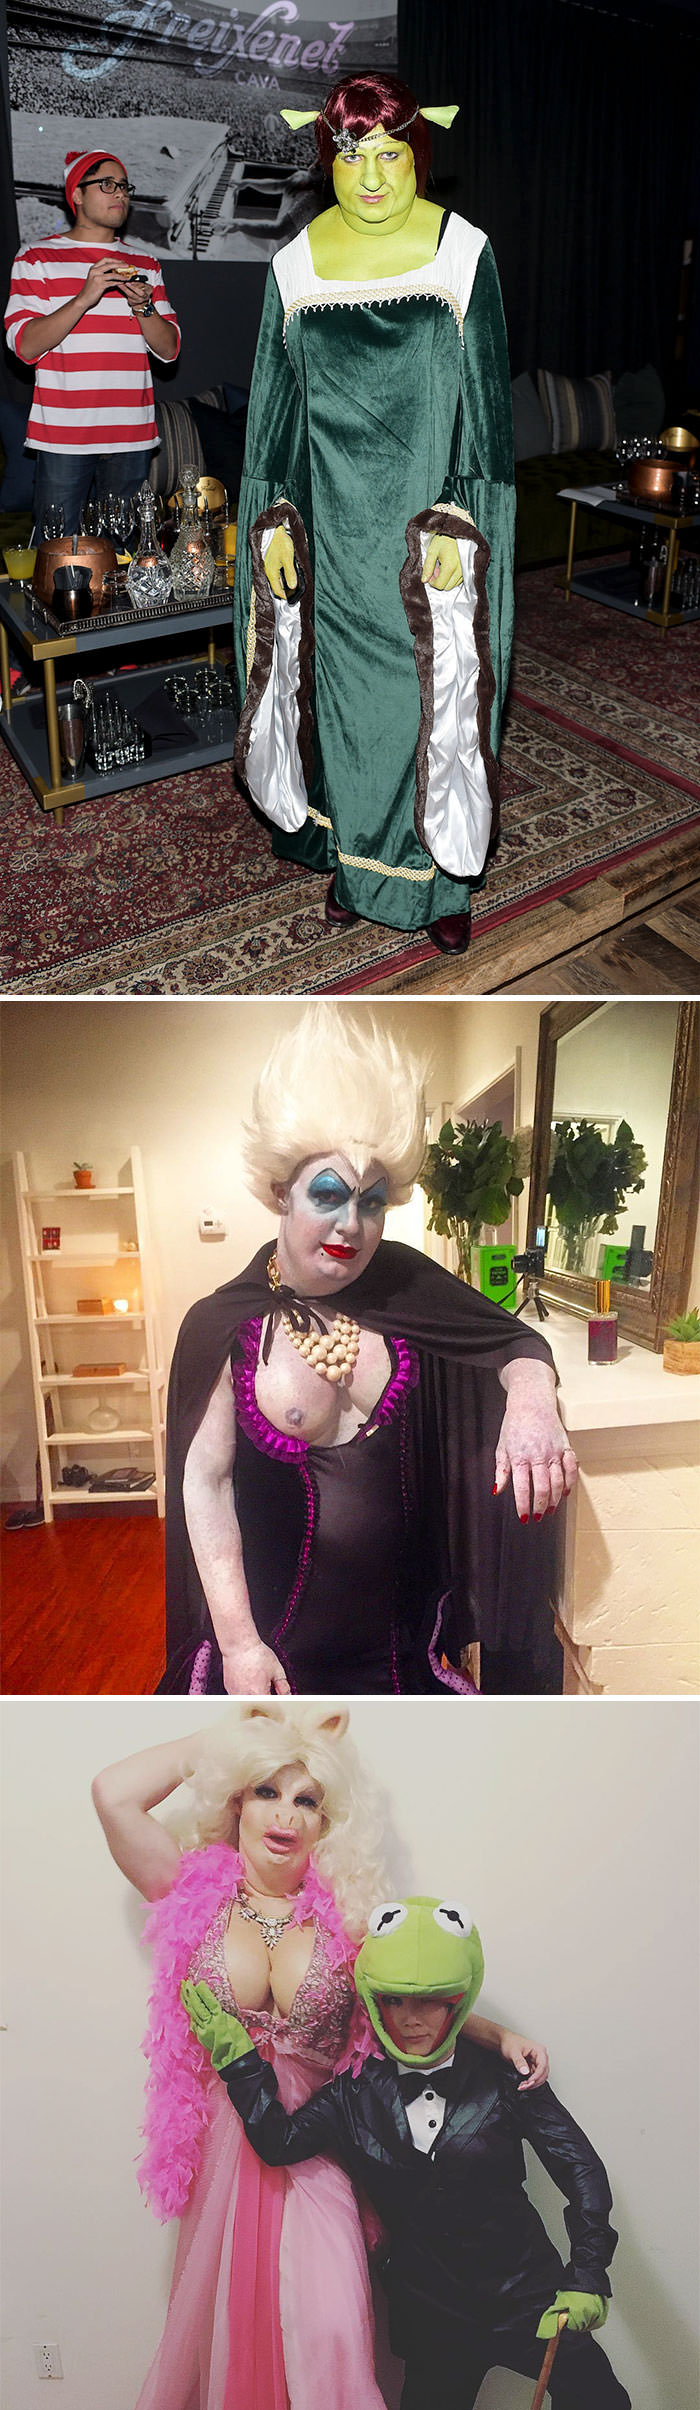 Colton Haynes as Princess Fiona, Ursula, and Miss Piggy.